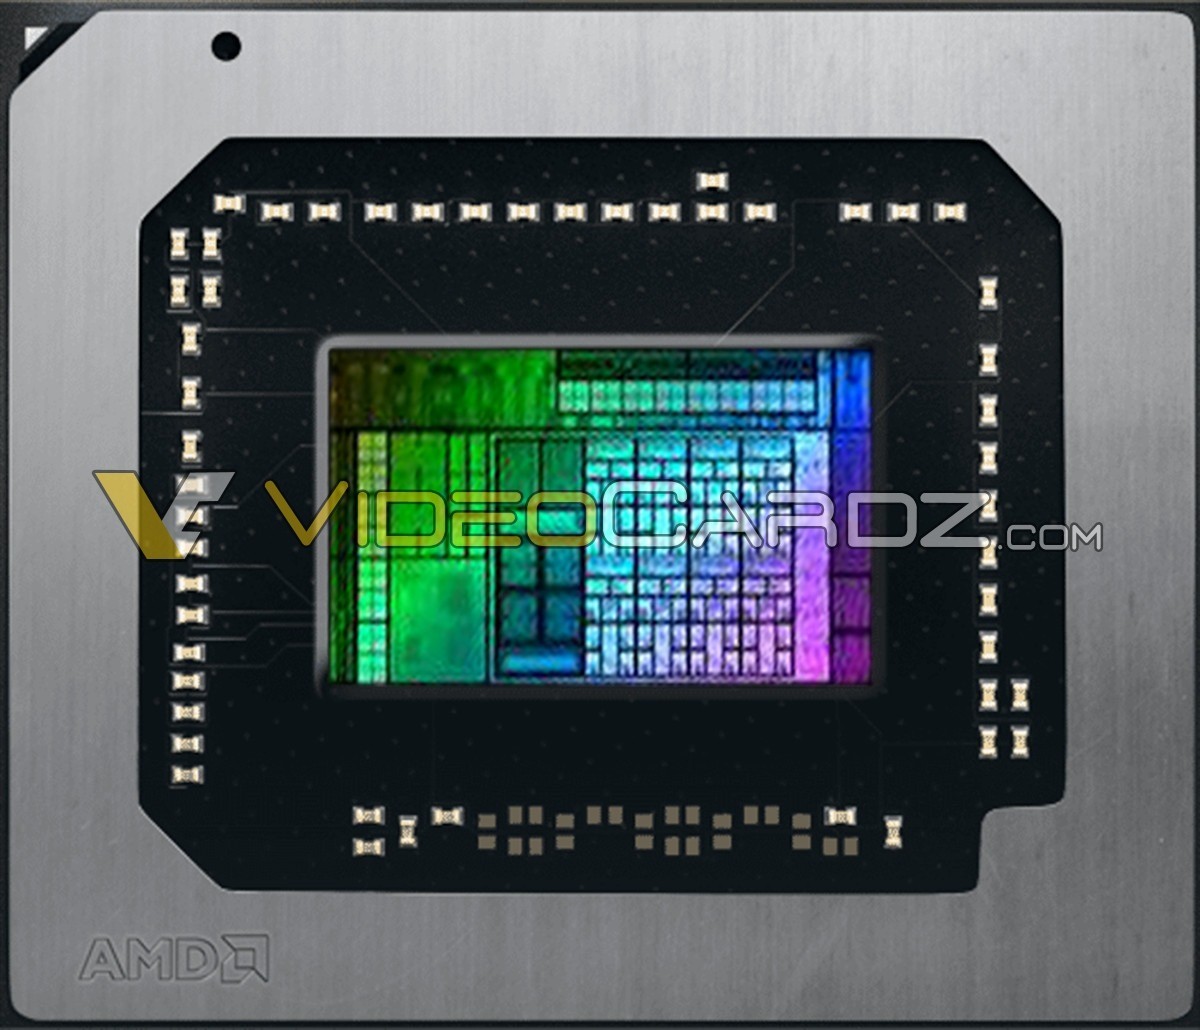 第一个6nm游戏GPU AMD Navi 24核心照首曝